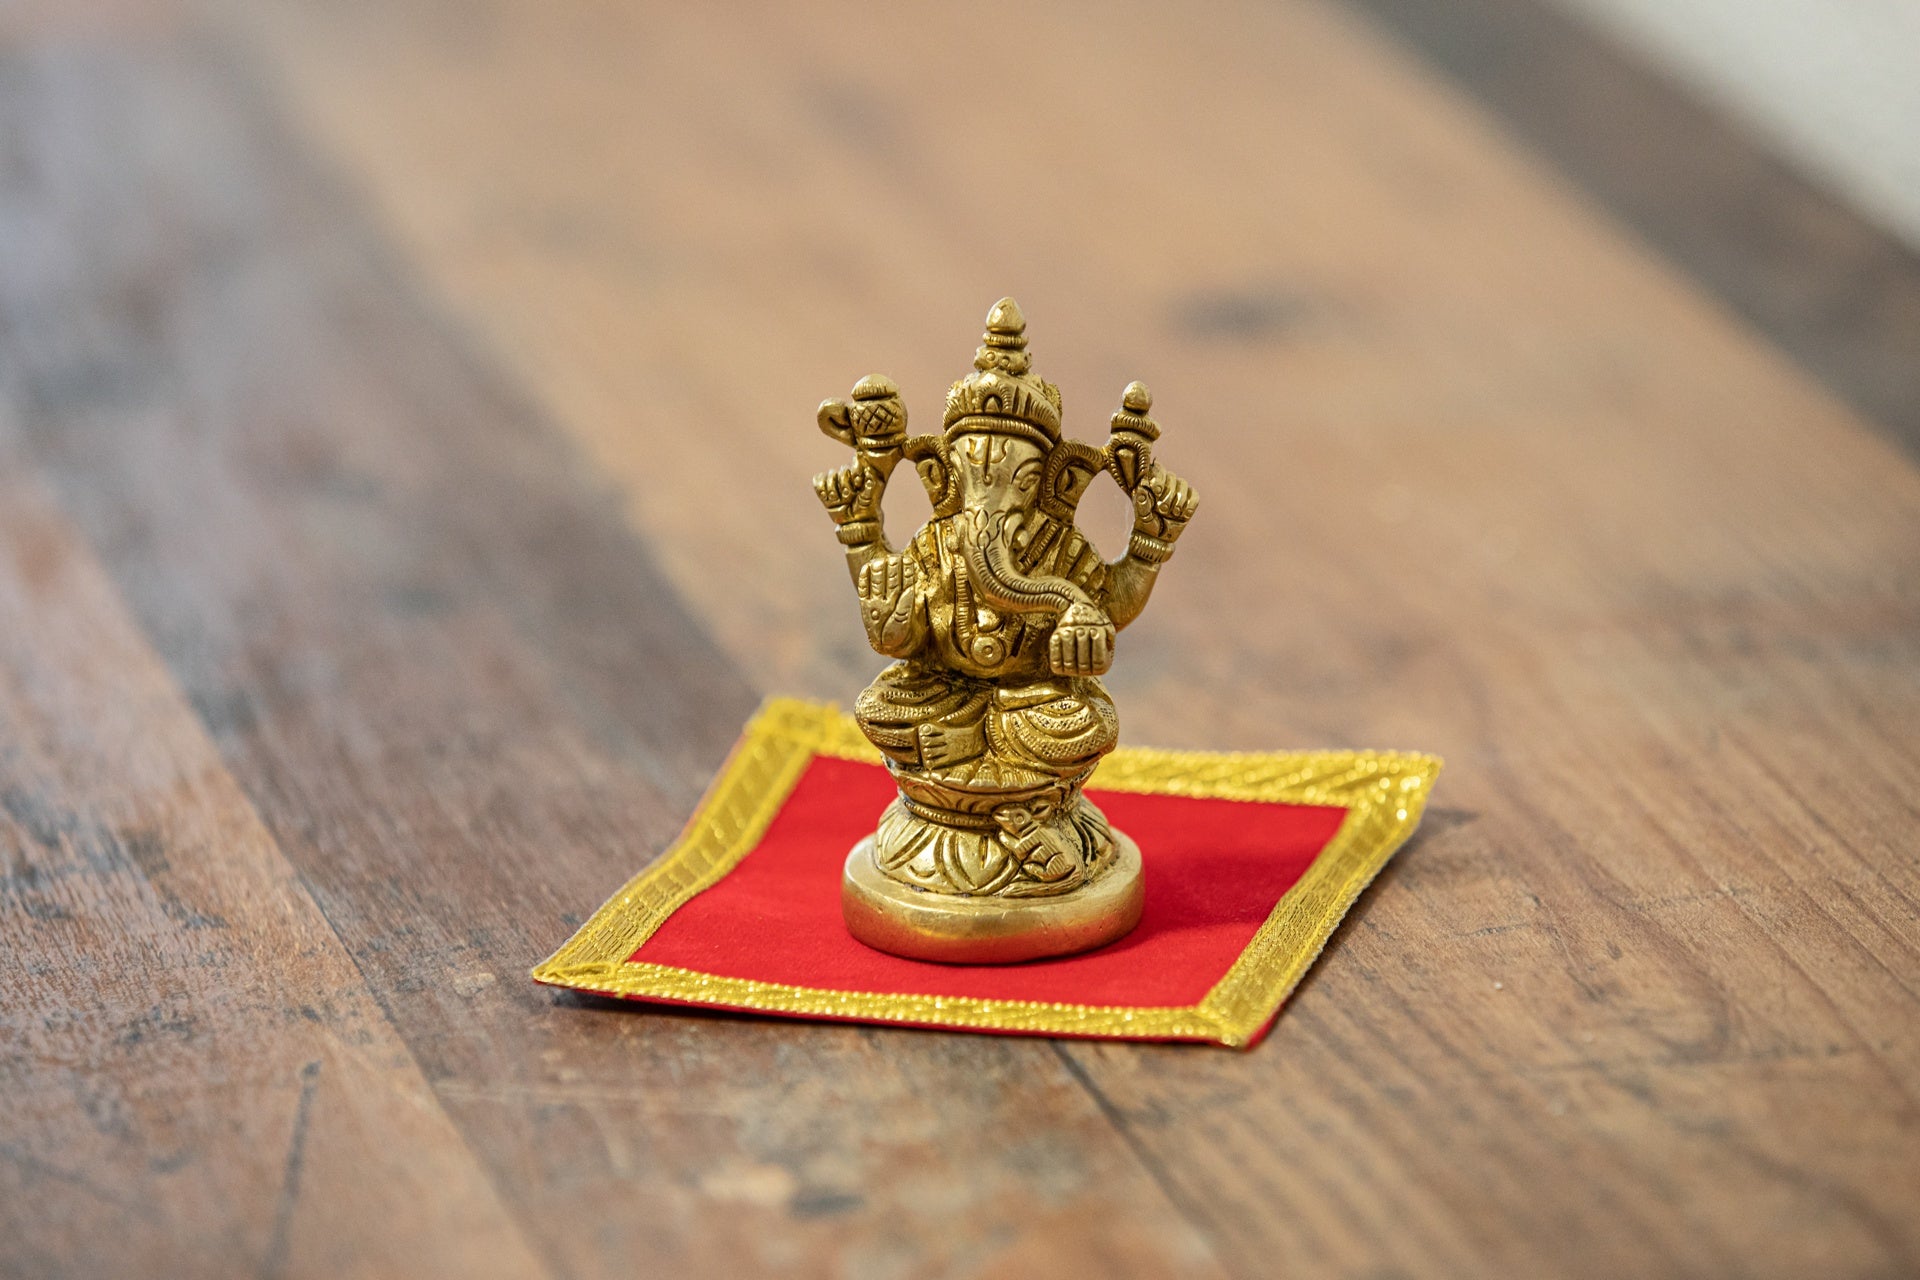 Lord Ganesha seated on Lotus